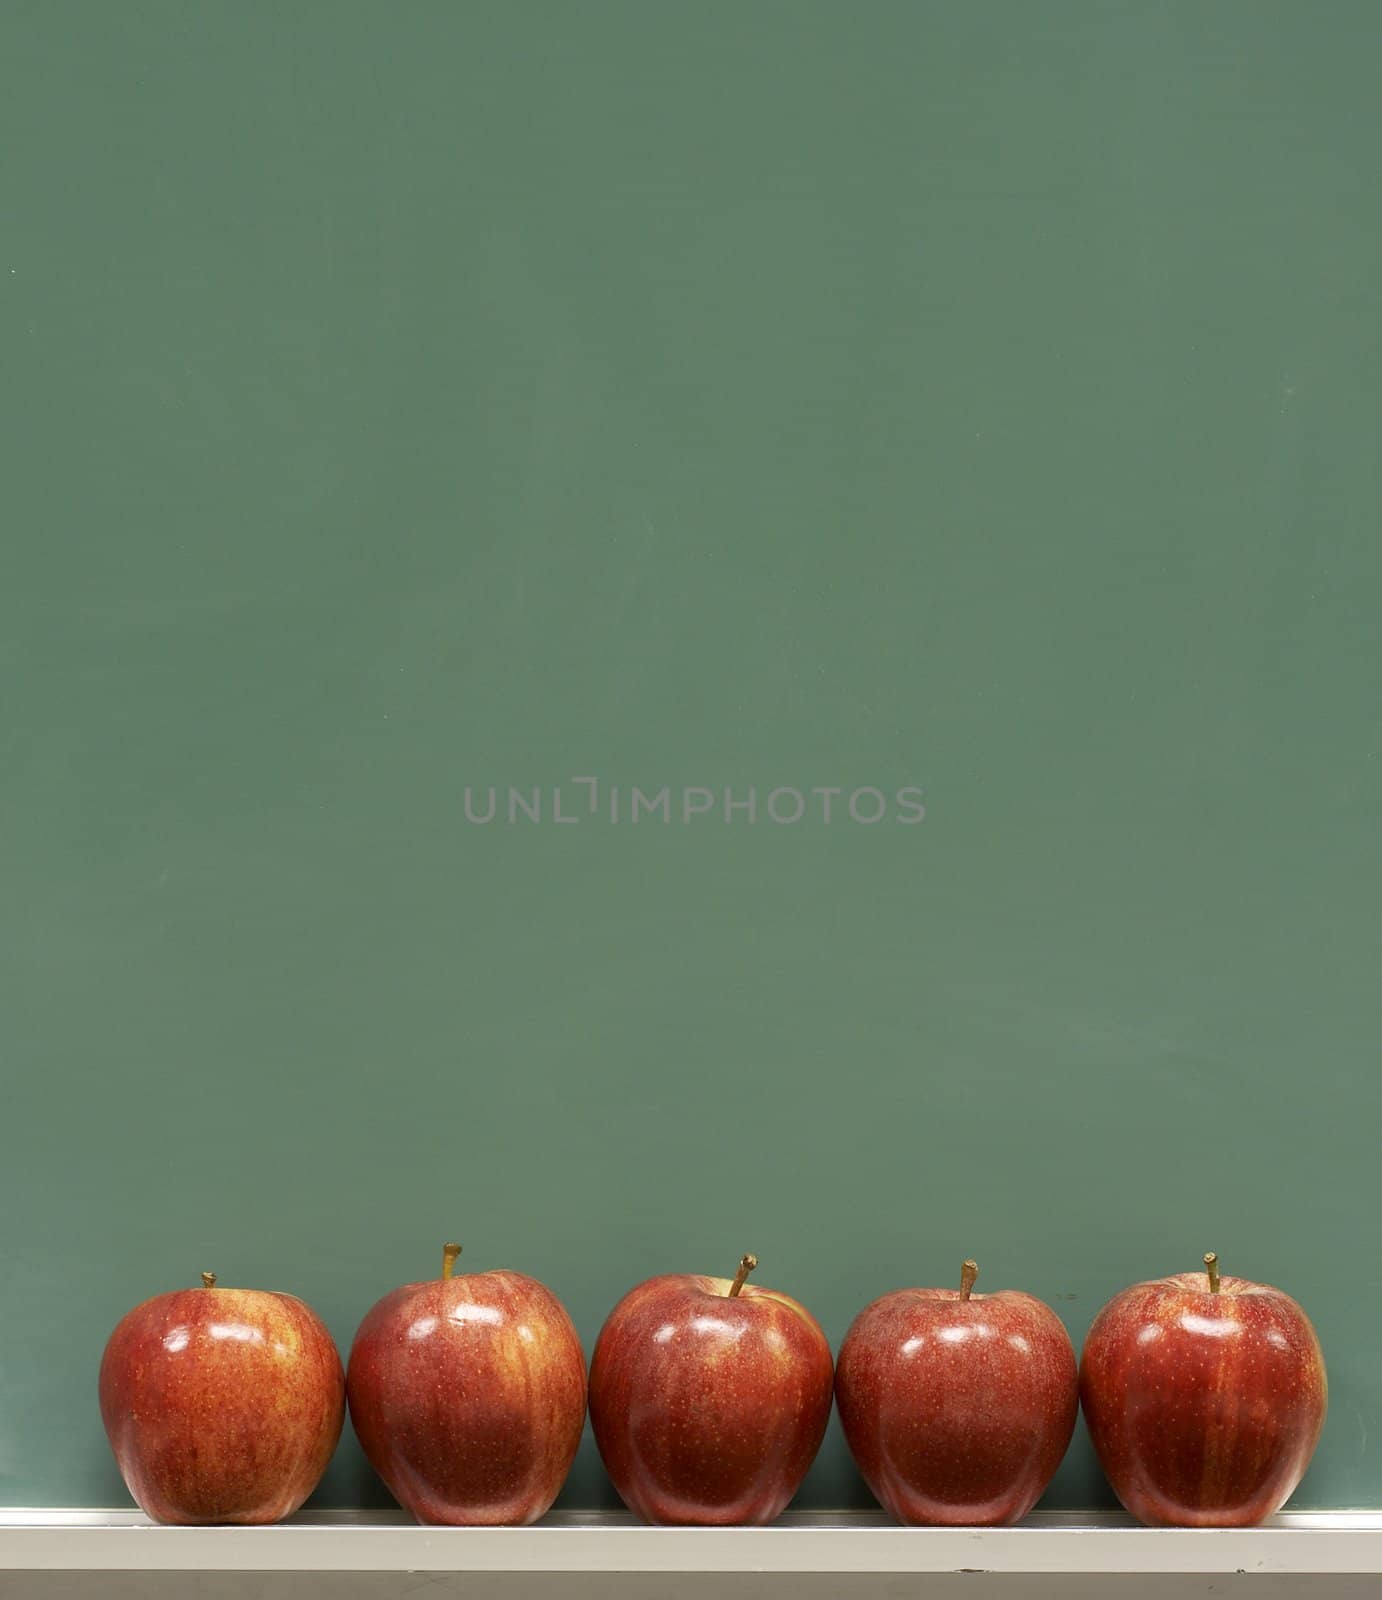 red apples on chalkboard in school classroom